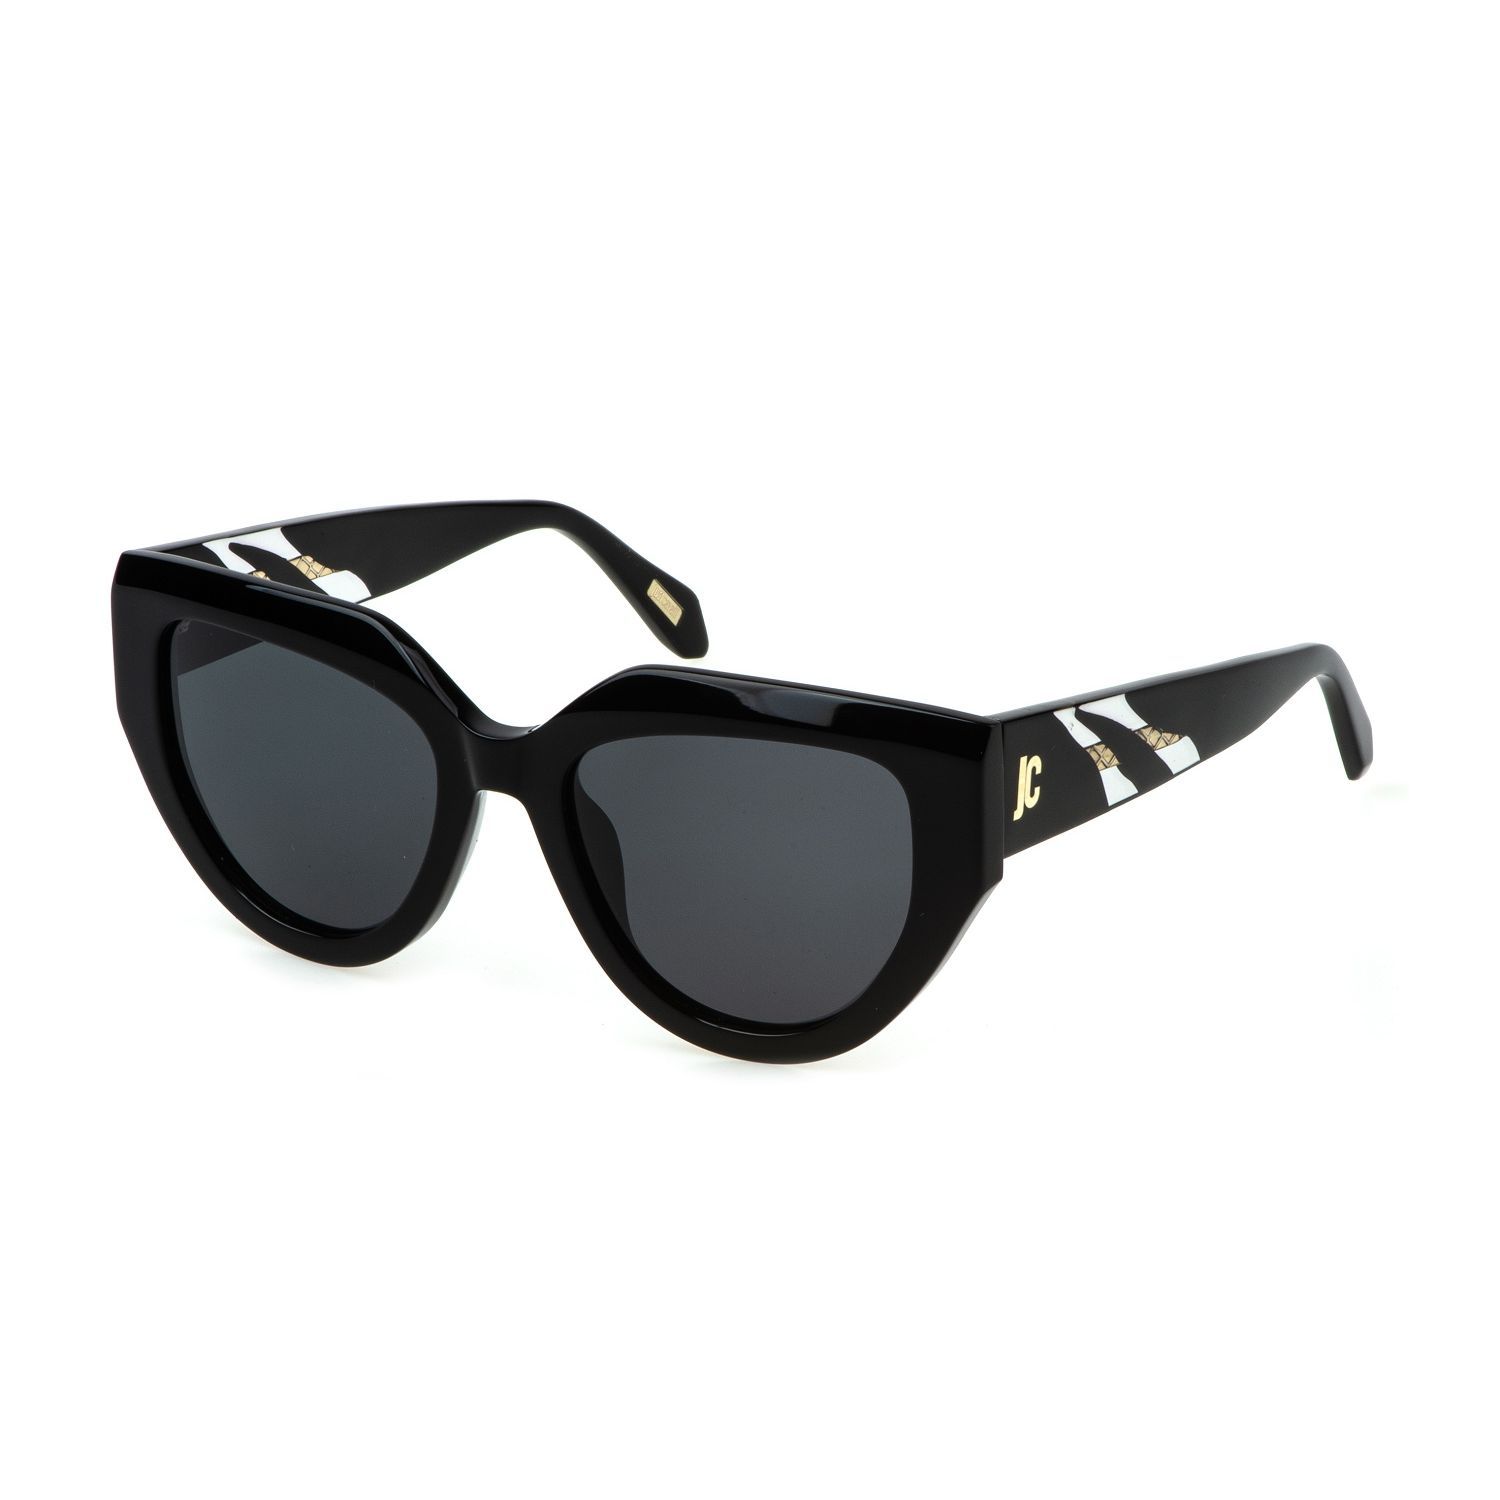 SJC086V Butterfly Sunglasses 0700 - size 53